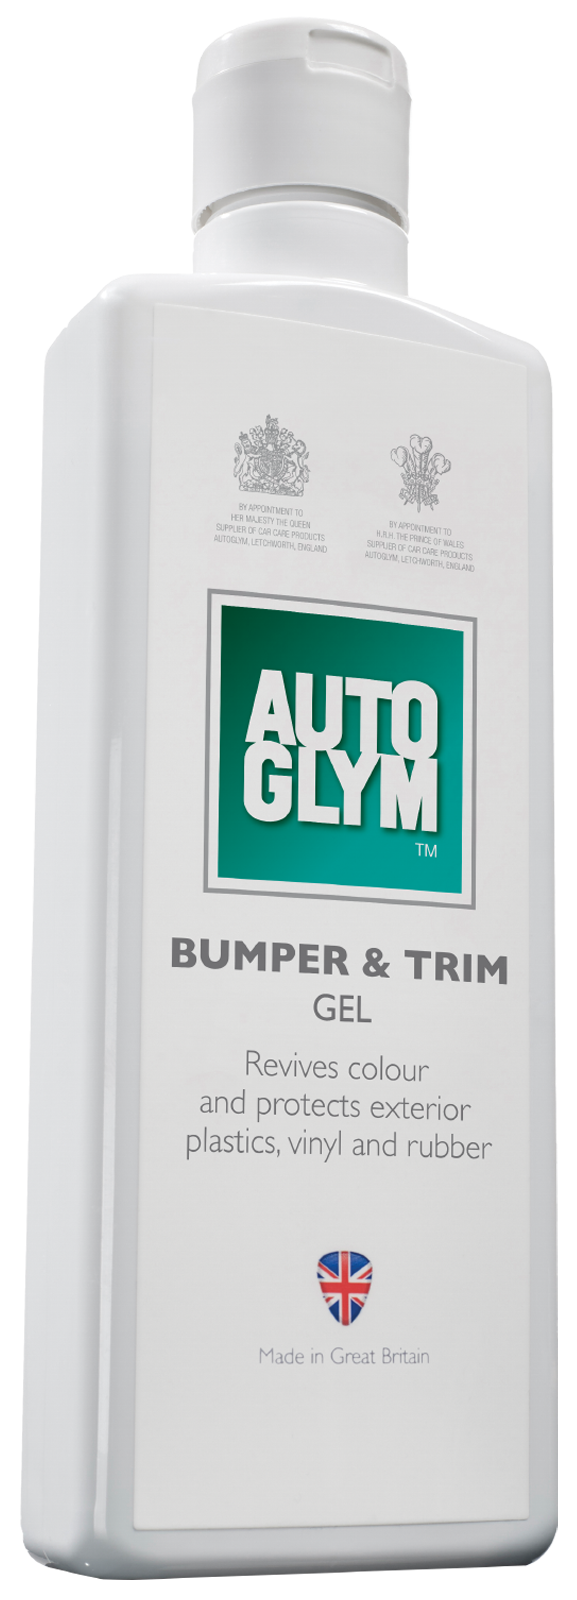 Auto Glym - Bumper & Trim Gel